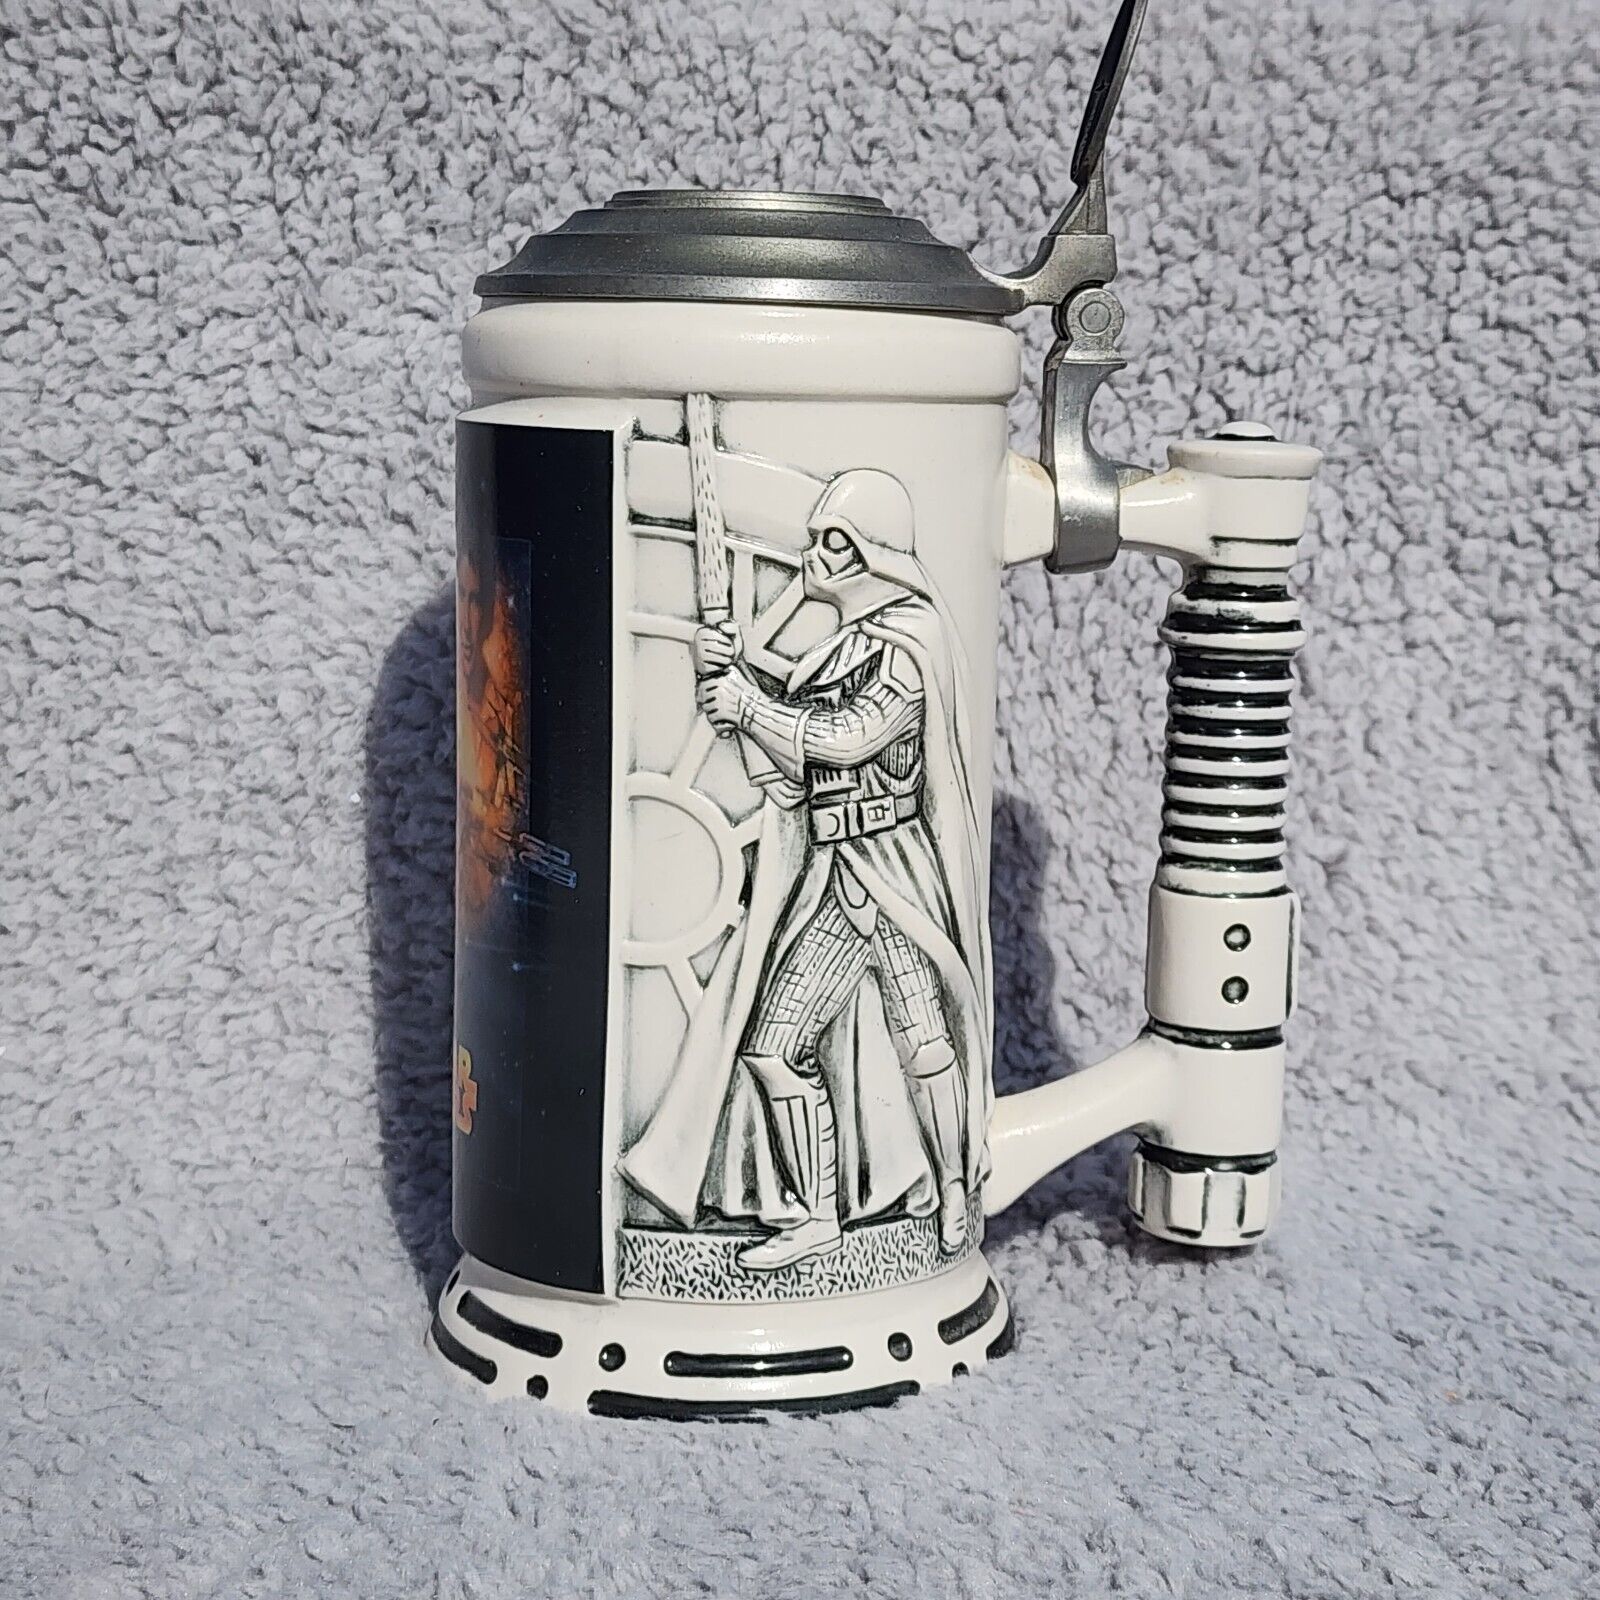 Star Wars SPECIAL EDITION Stein 3D Ceramic Stoneware 1998 Avon 20th Anniversary 